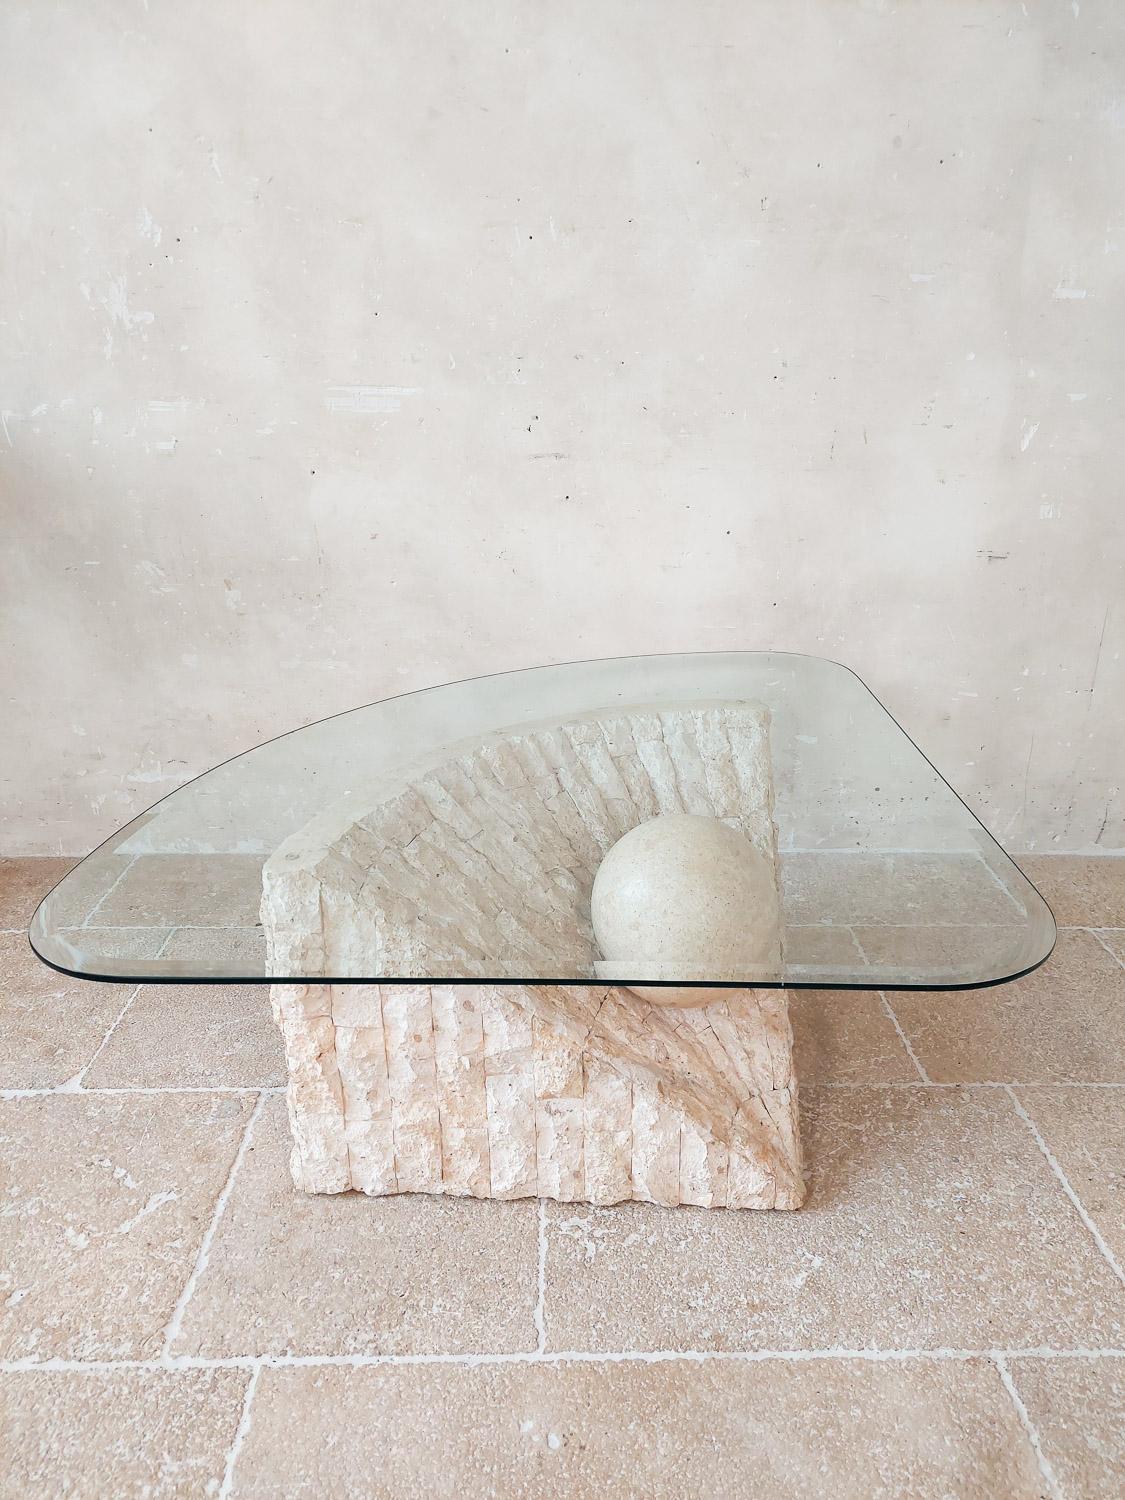 Couchtisch aus Mactan-Stein von Magnussen Ponte, 1980er Jahre. Einzigartiges postmodernes Design mit einem strukturierten und geometrischen Sockel mit einer aufgehängten Kugel, die die dreieckige Glasplatte hält. 

Mactan ist ein Naturstein.